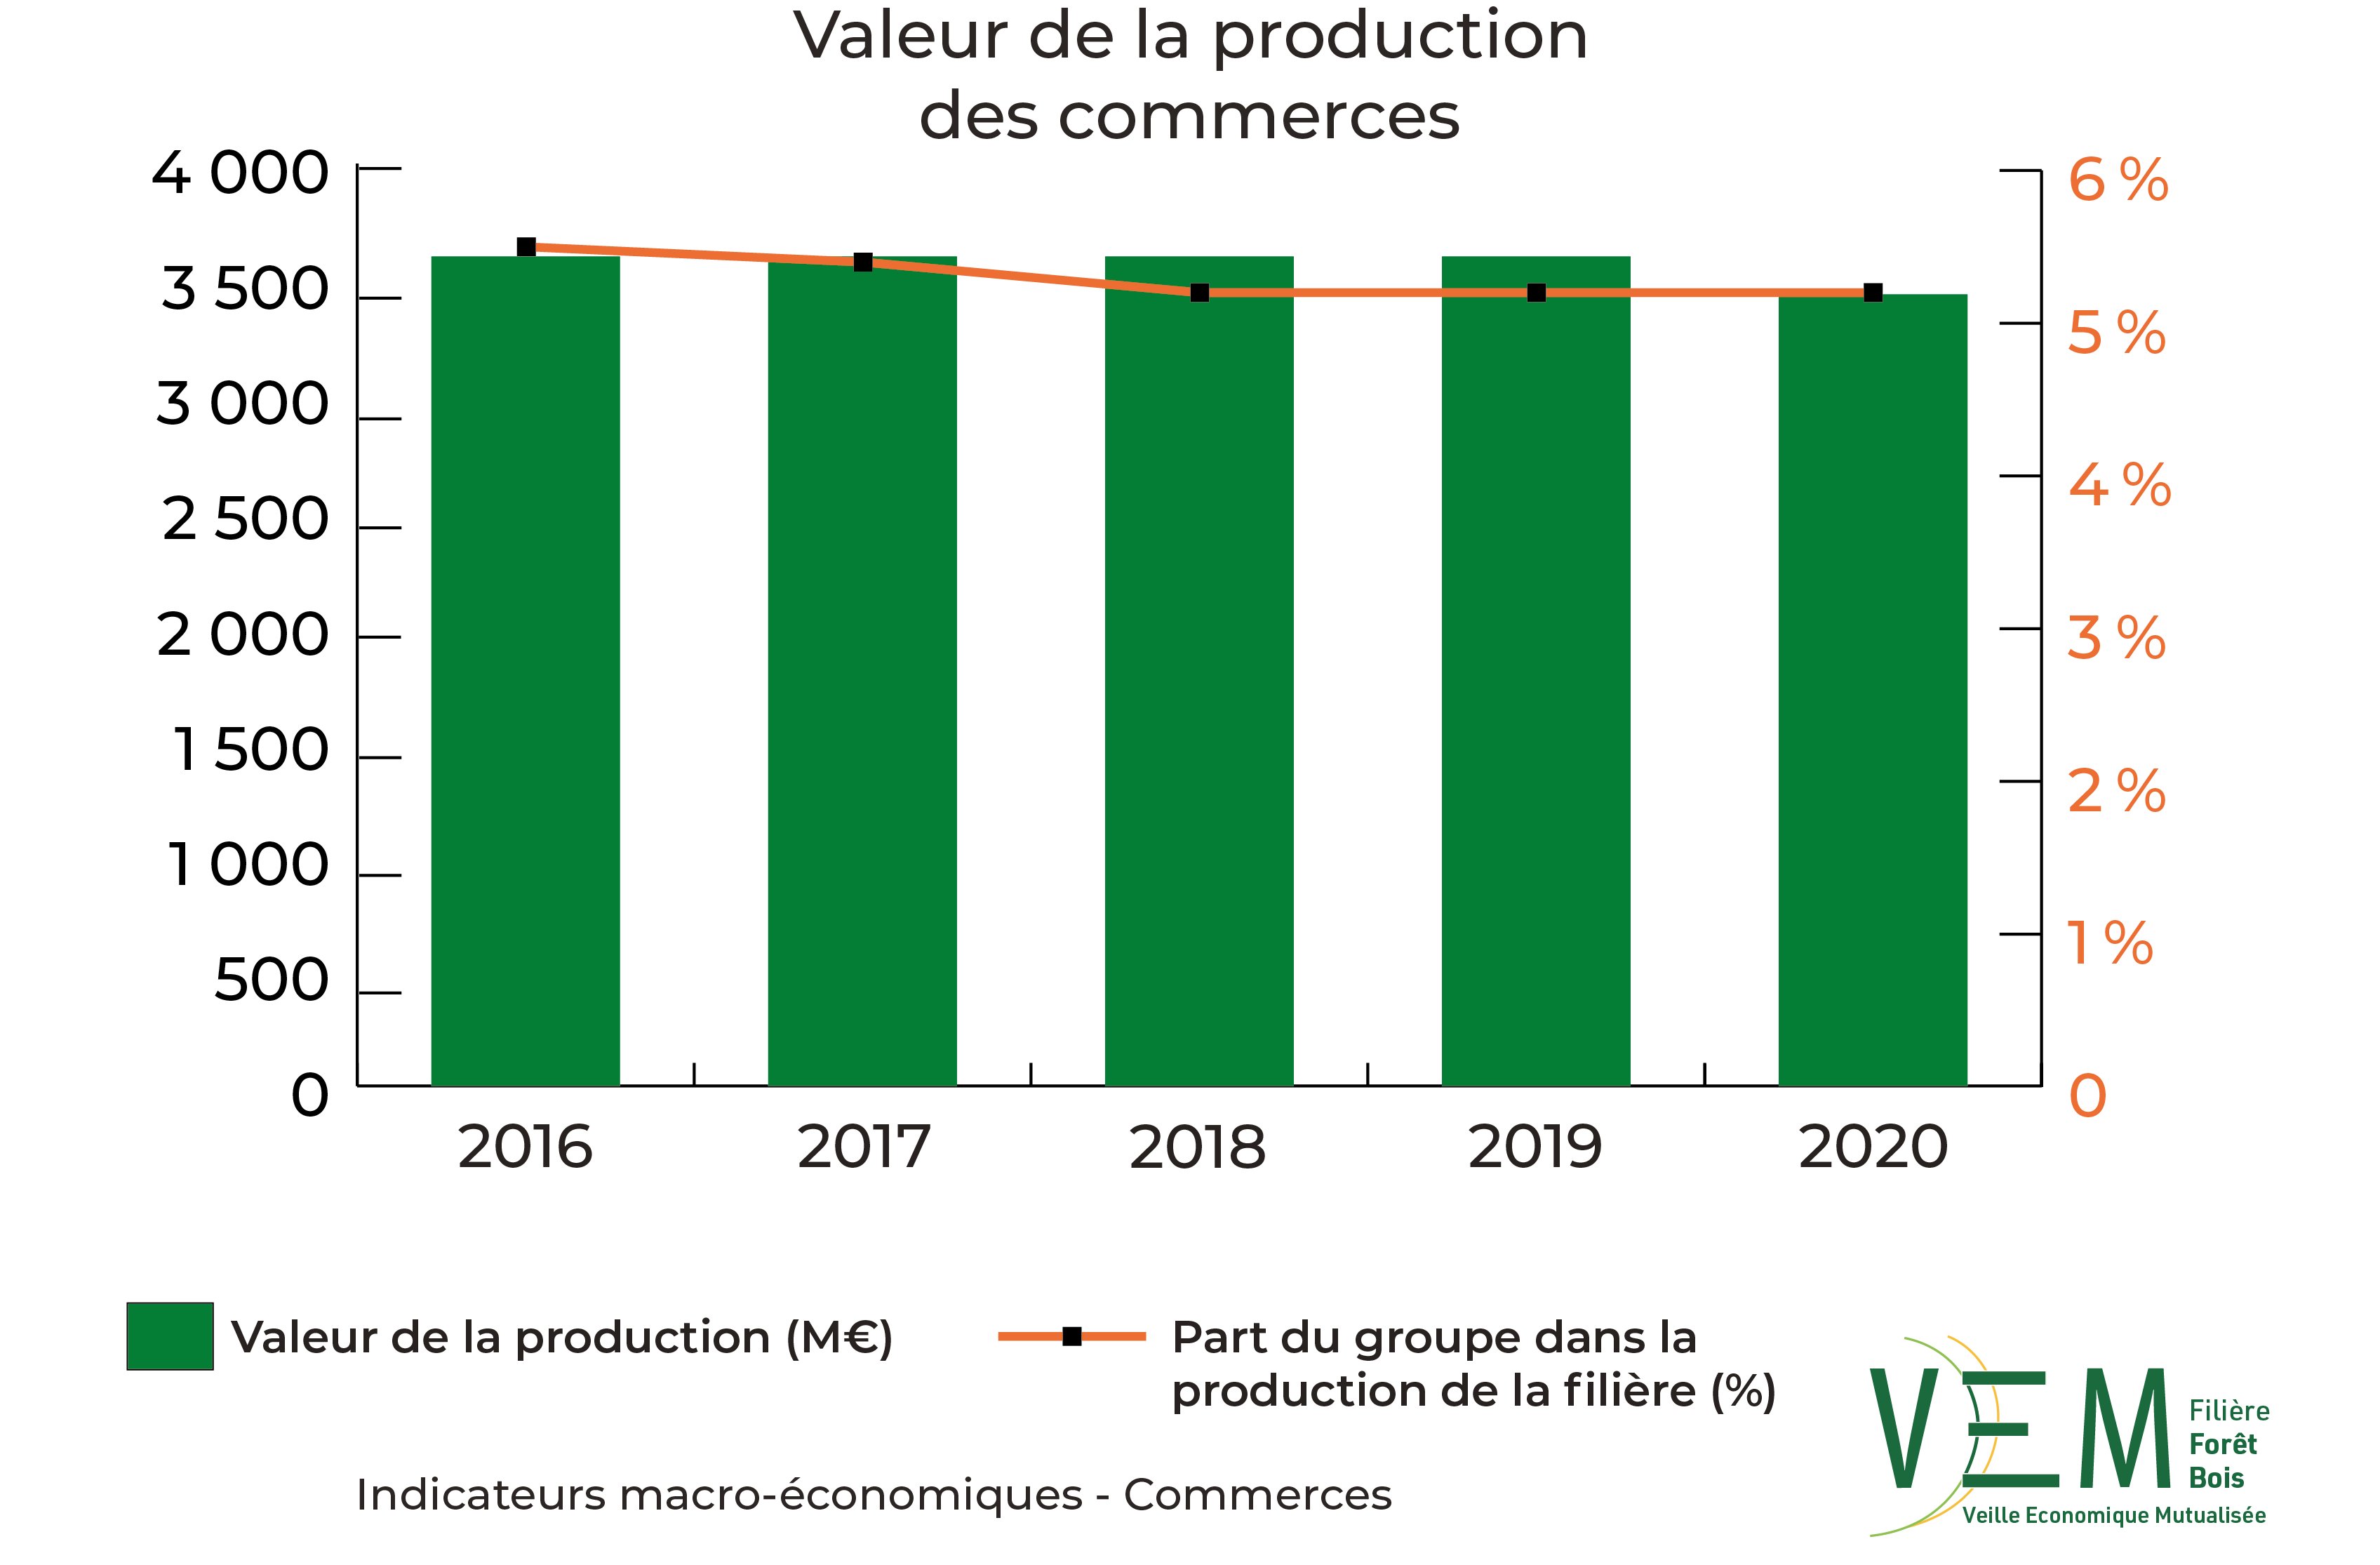 2022 IME Valeur production des commerces Meuros new